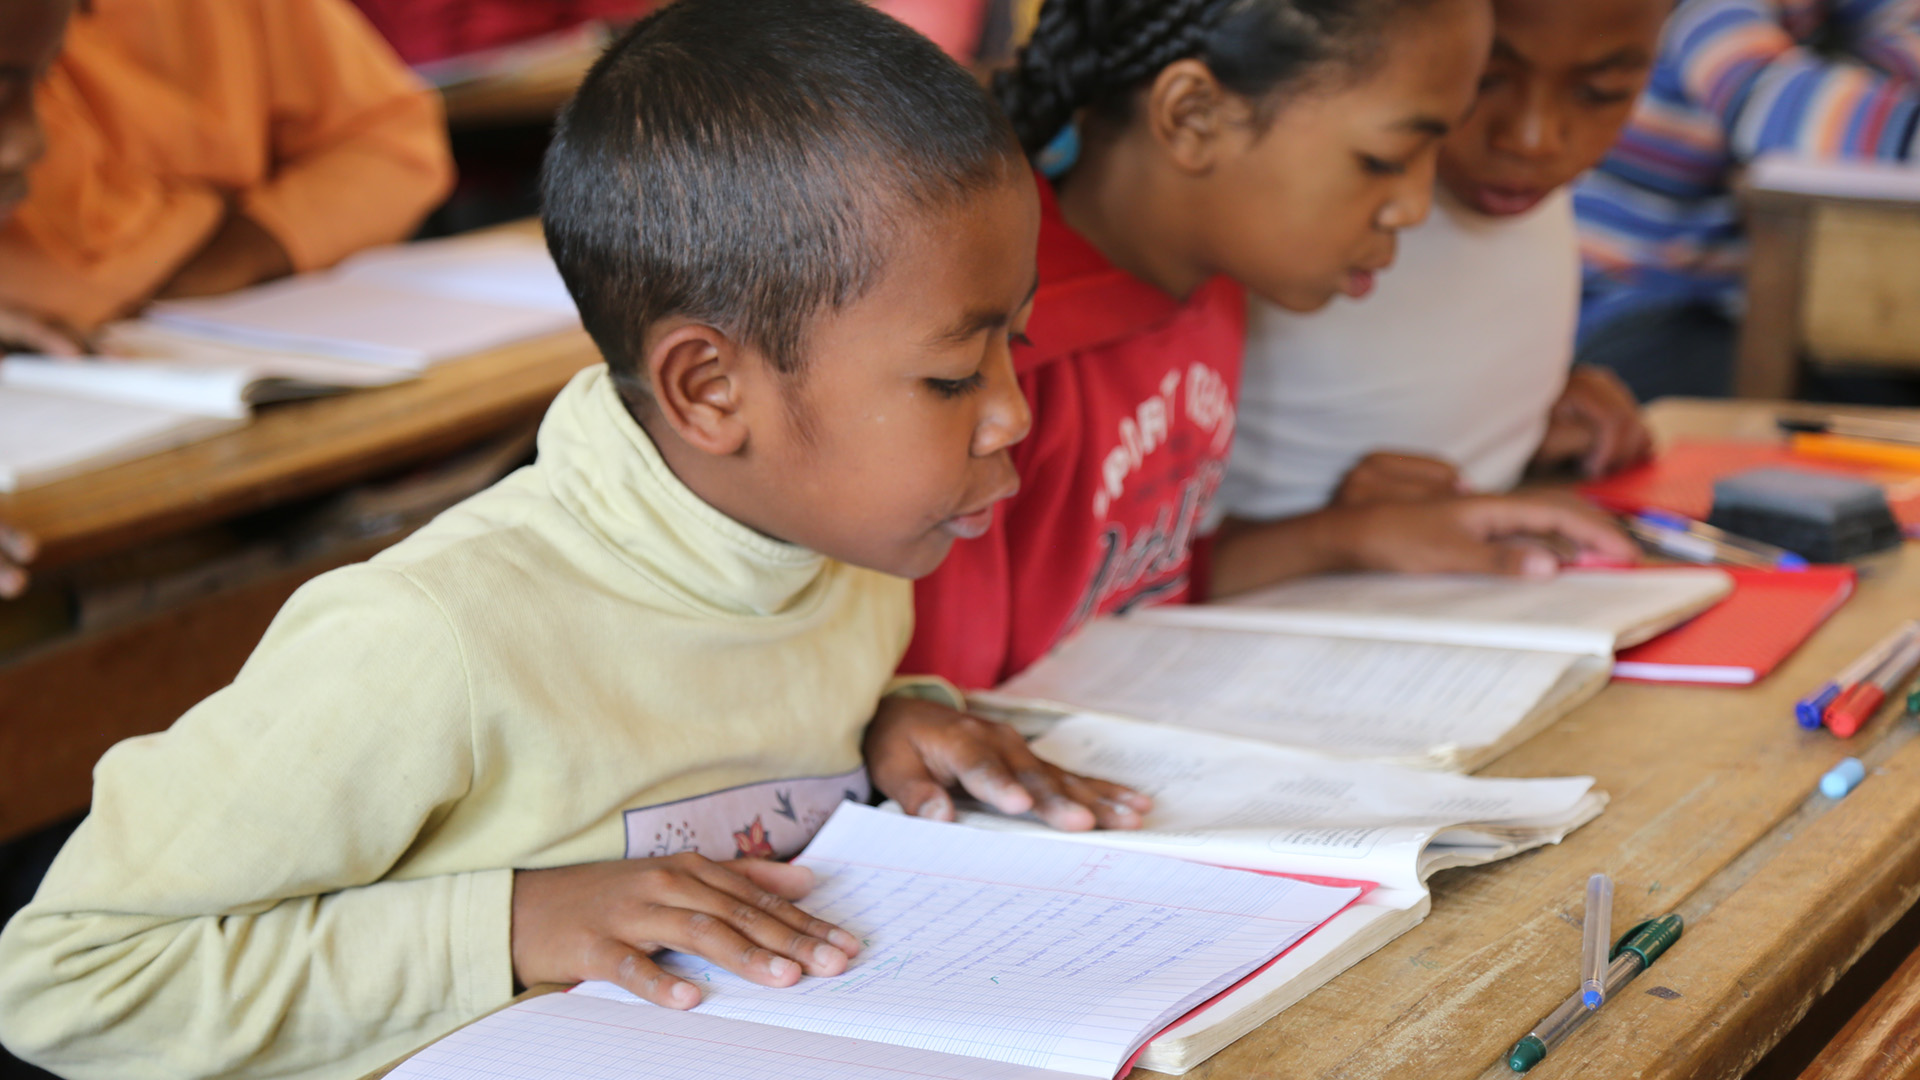 Credit/ALT text: Un garçon lit en classe à Madagascar. Crédit: GPE/Carine Durand